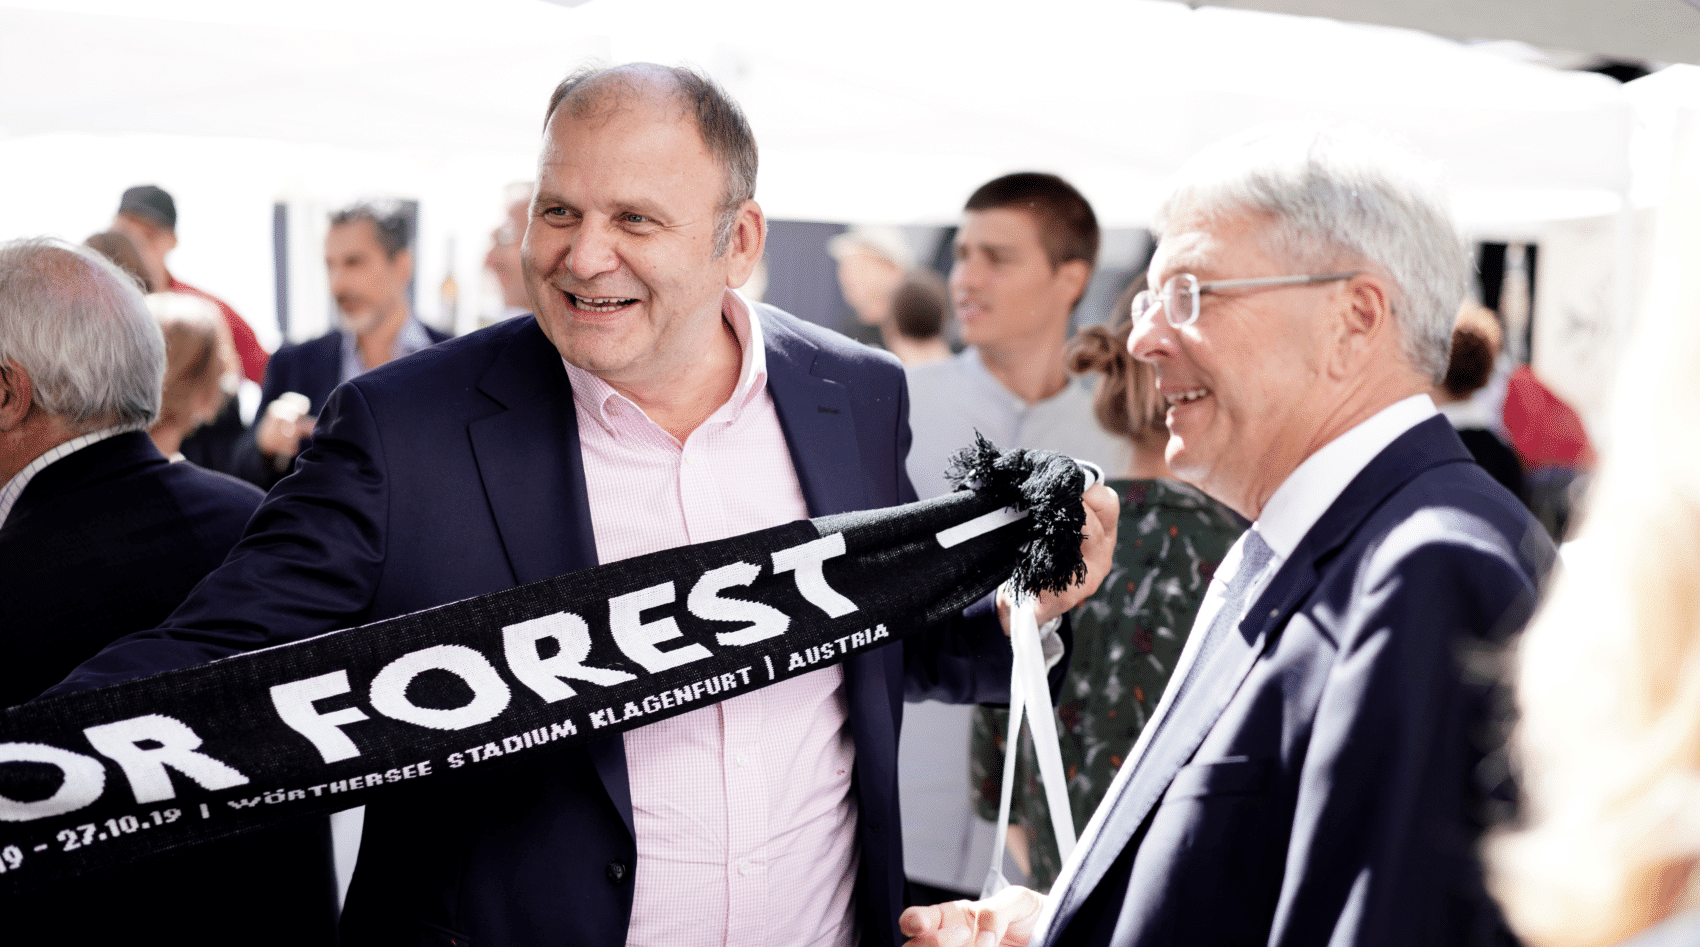 „For Forest“, Kärnten zieht internationale Aufmerksamkeit auf sich. 